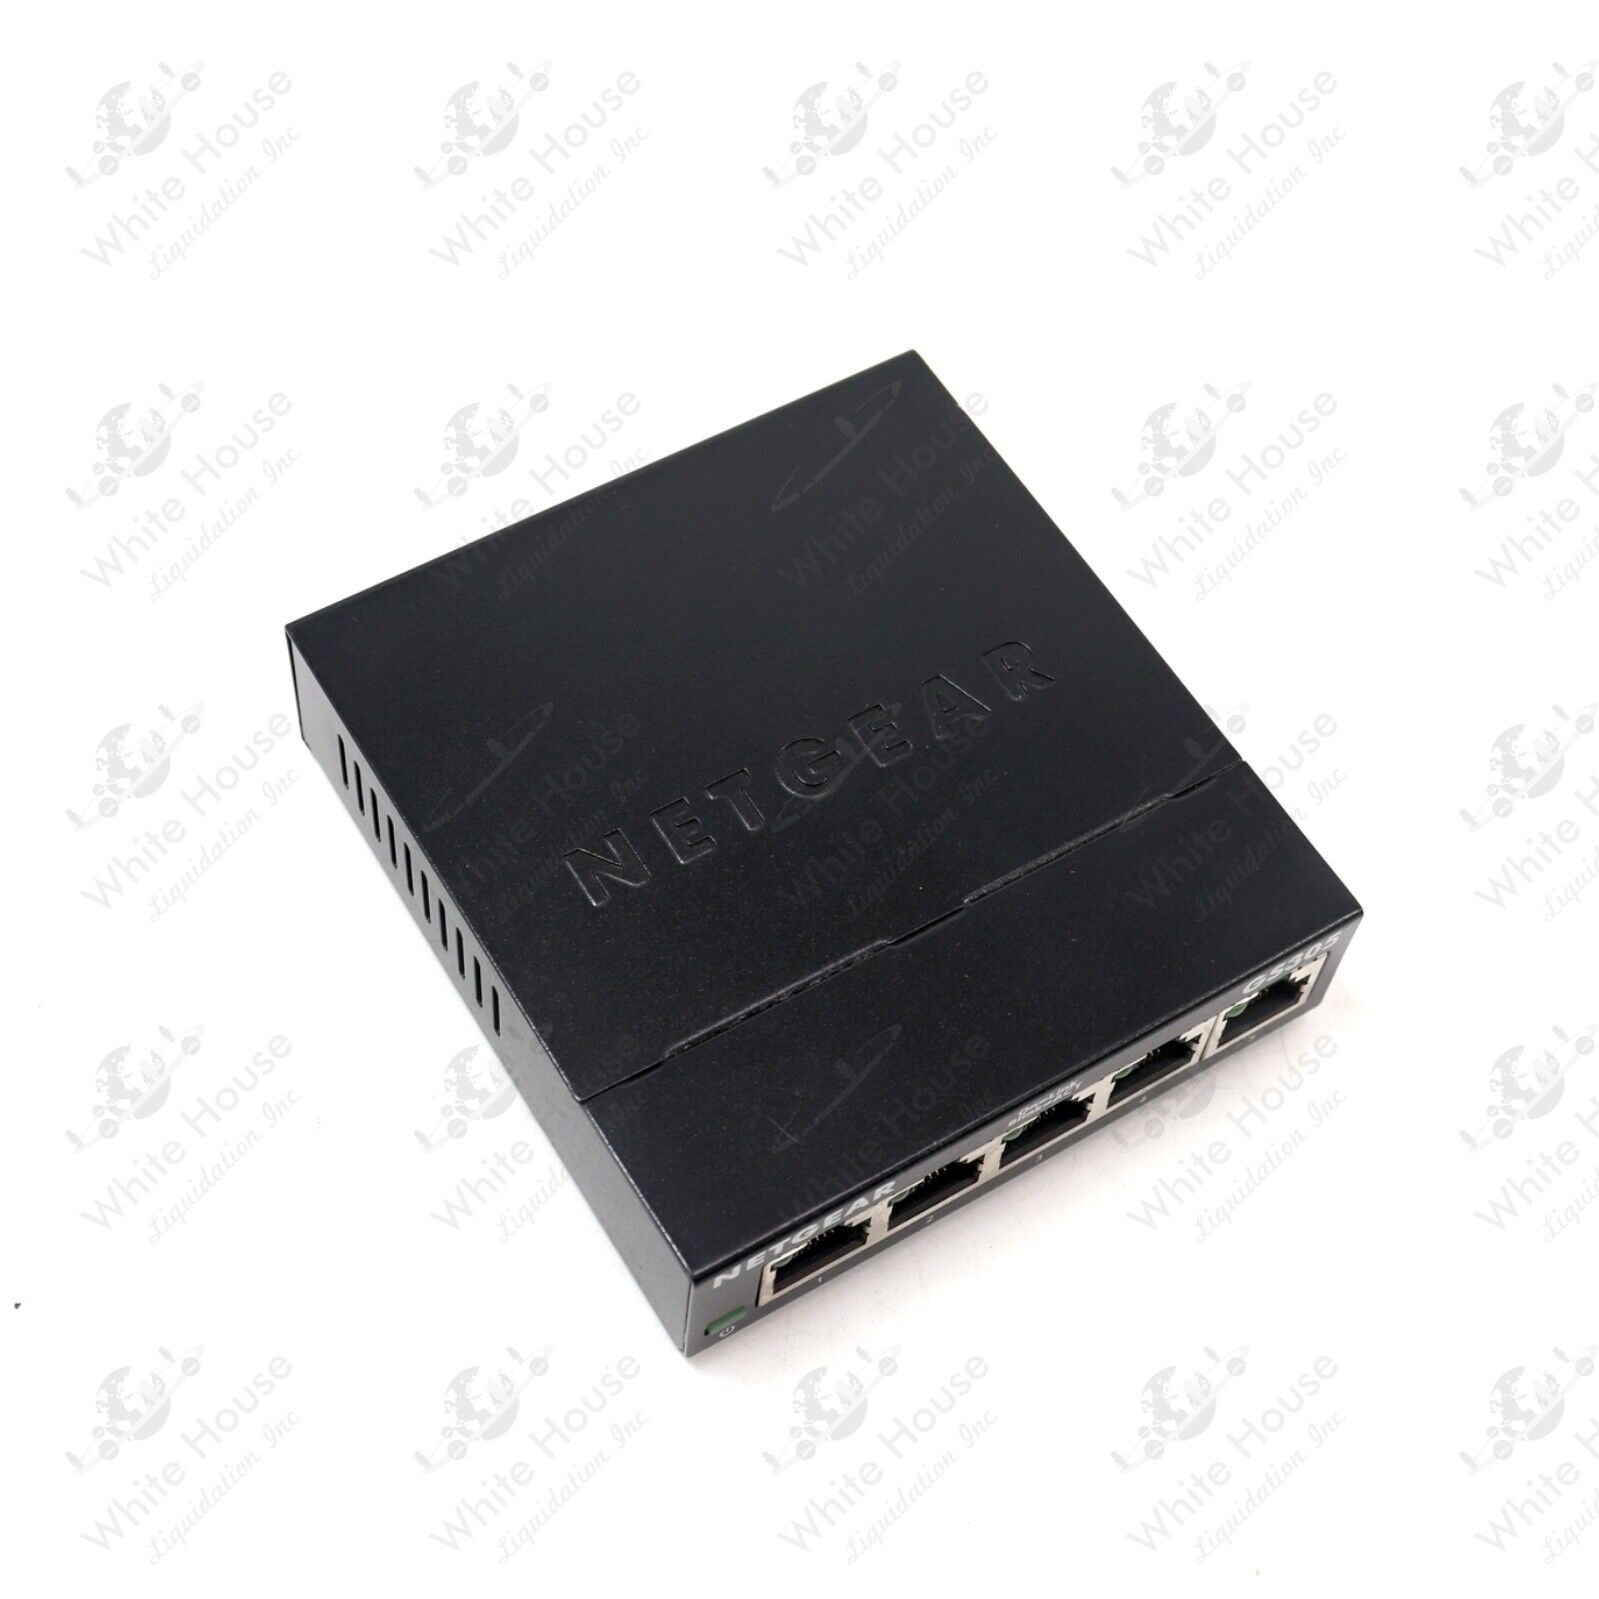 NETGEAR GS305v3 5 Port Gigabit Ethernet Switch